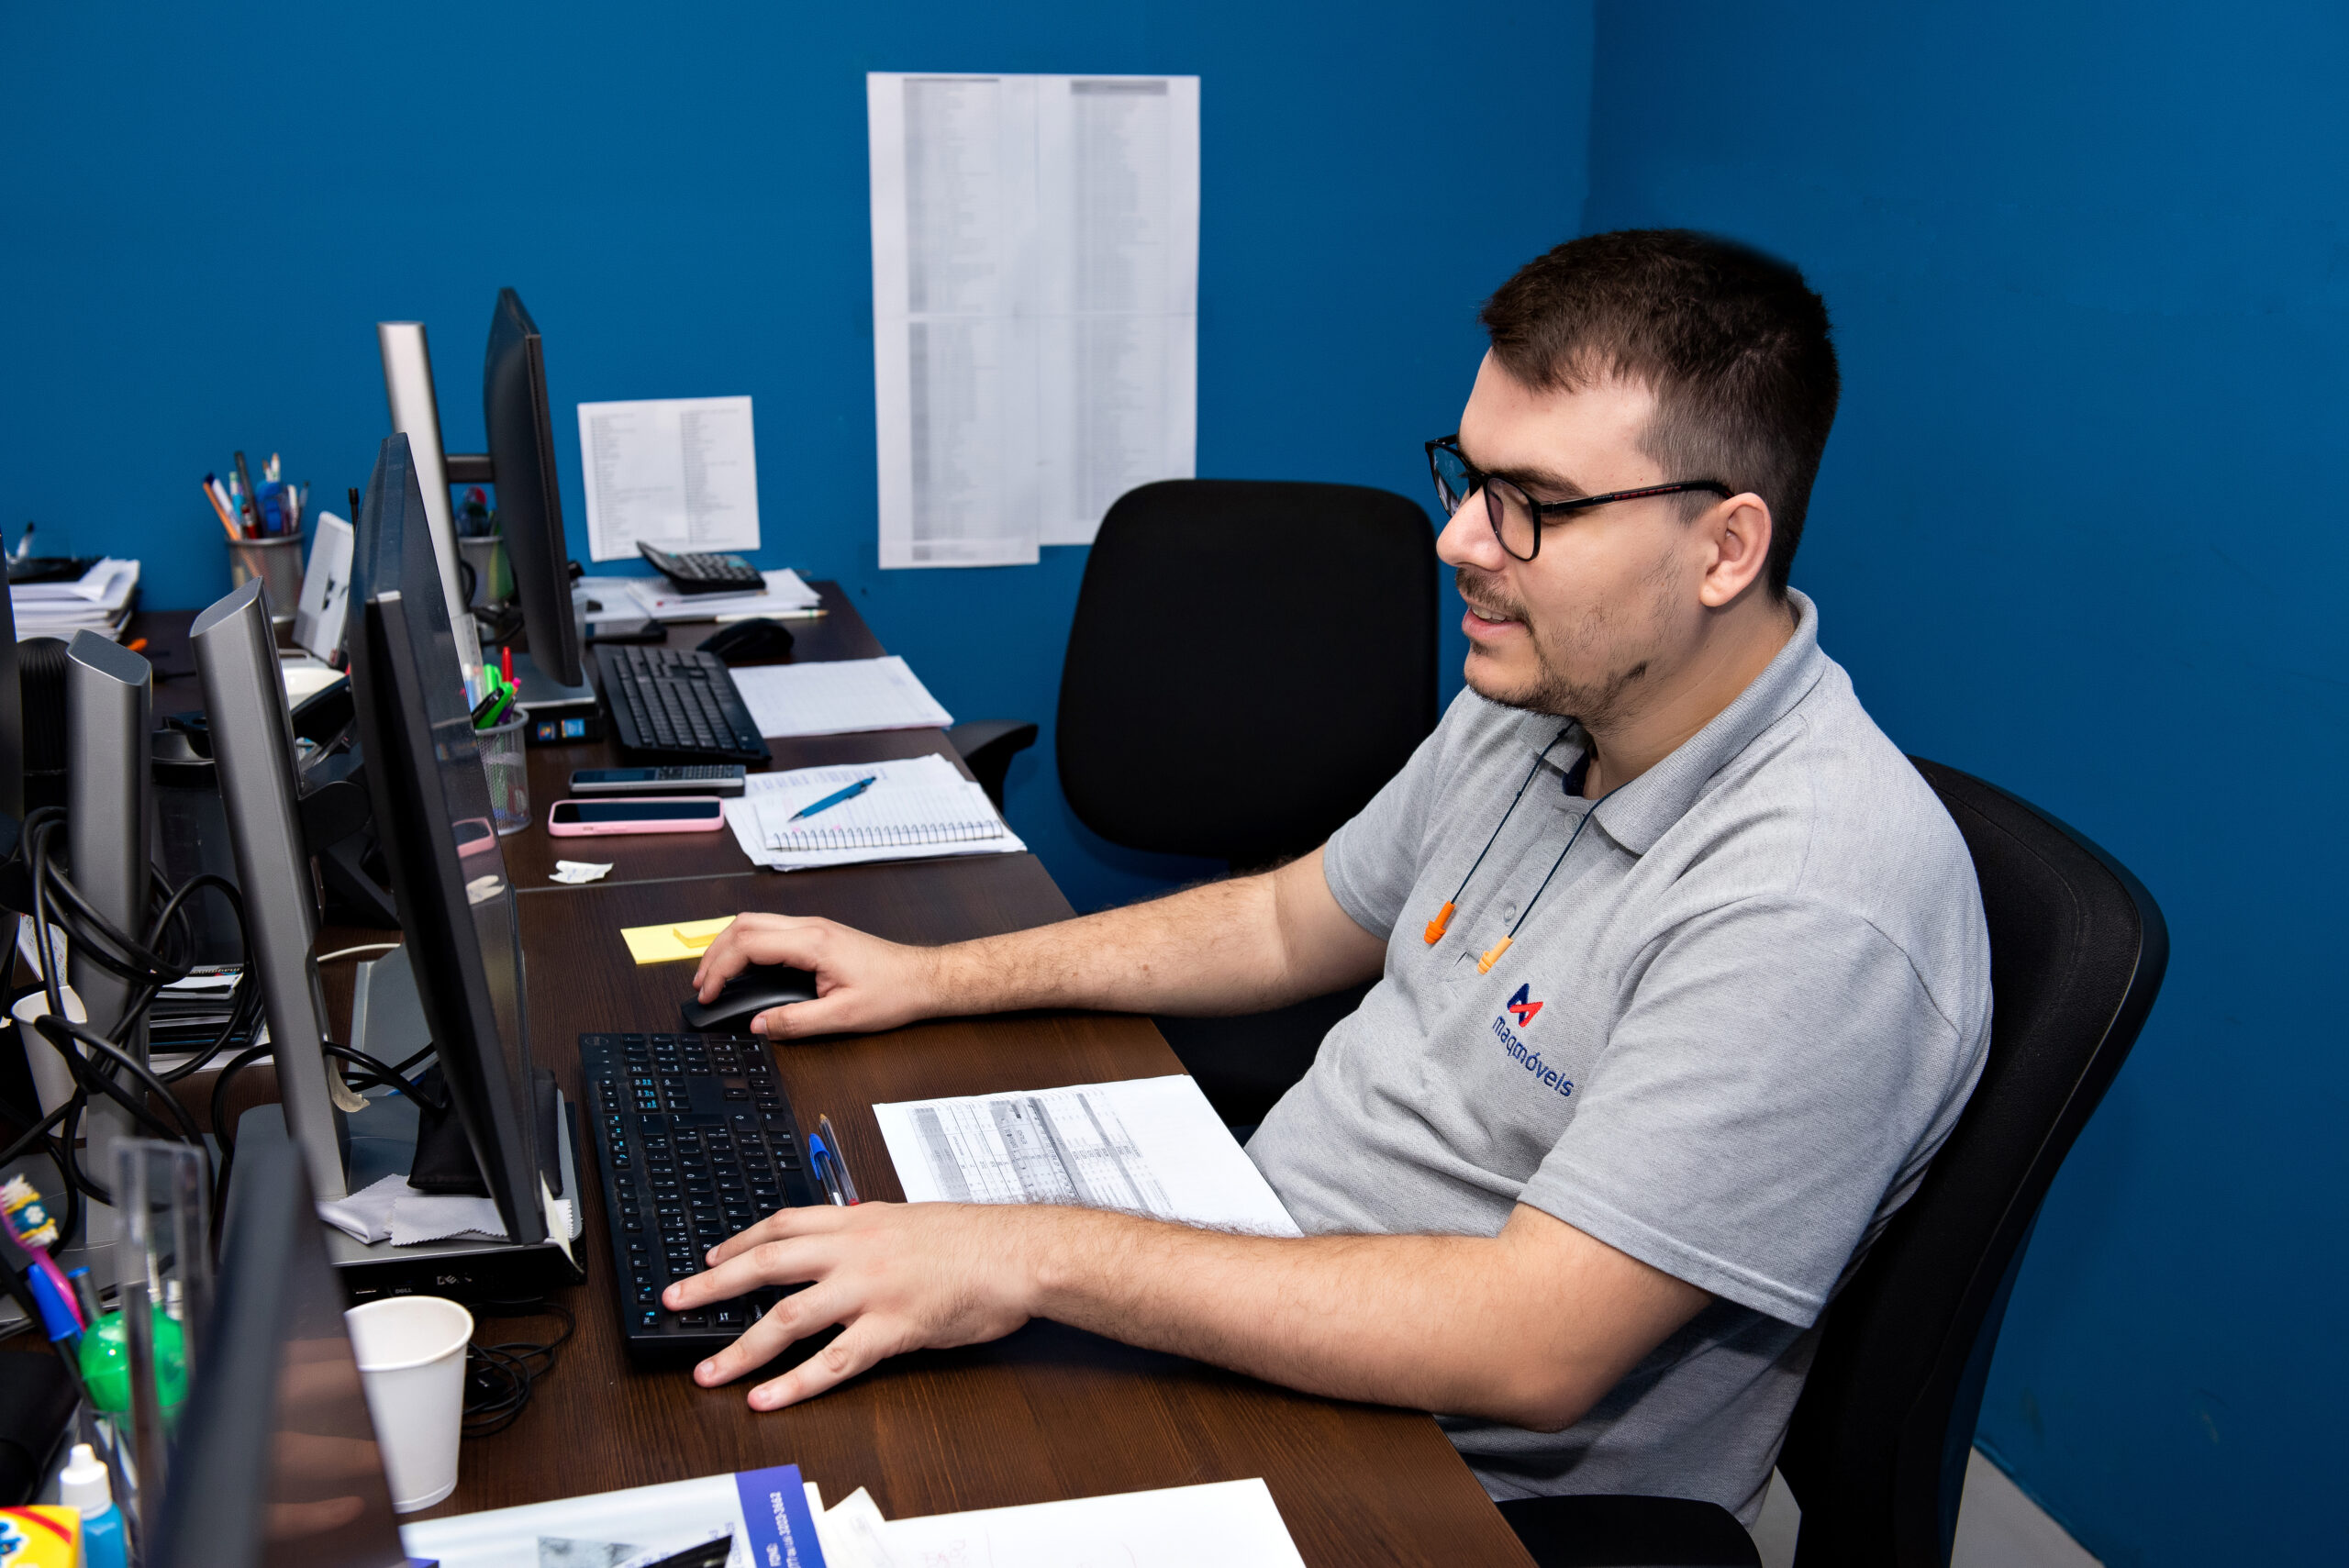 A imagem apresenta um homem branco, de cabelos escuros e curtos, que faz uso de óculos e uma camiseta cinza, em seu posto de trabalho, uma mesa com computador, em uma sala de paredes azuis.